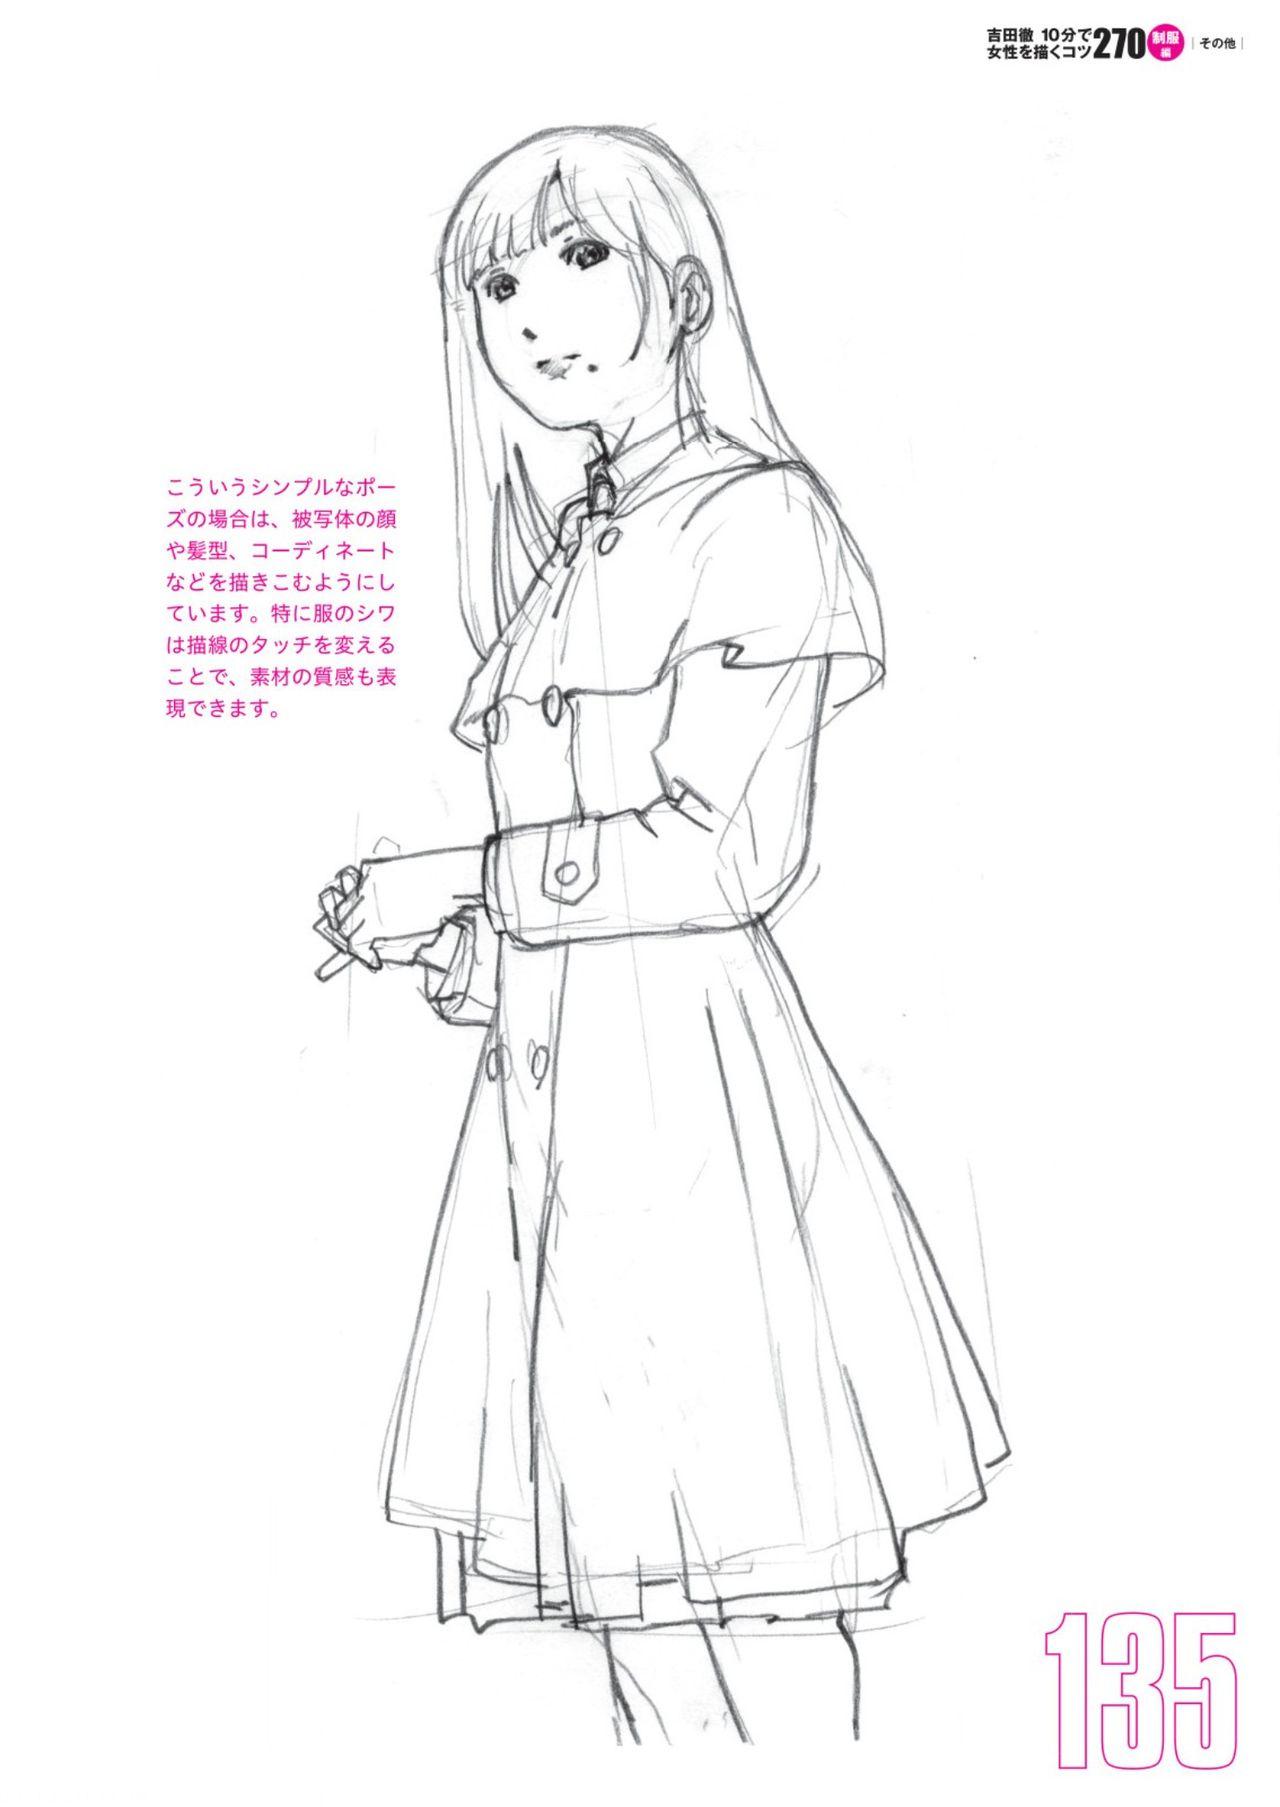 Toru Yoshida Tips for drawing women in 10 minutes 270 Uniforms 136